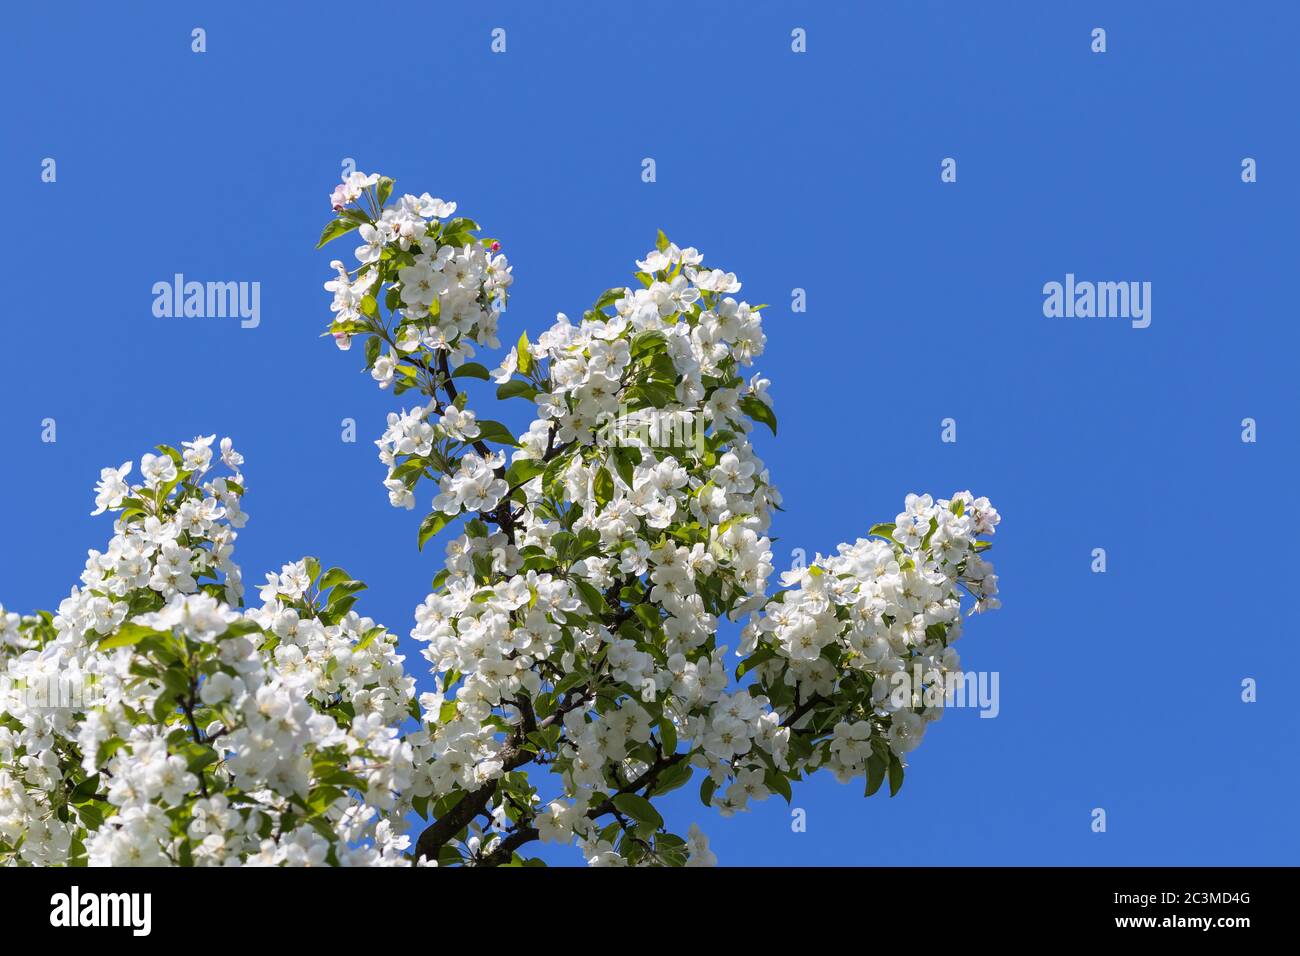 Crabe chinois en fleurs (Malus spectabilis, pomme asiatique, pomme à fleurs chinoise) au printemps, avec ciel bleu à l'arrière-plan, espace de copie disponible. Banque D'Images